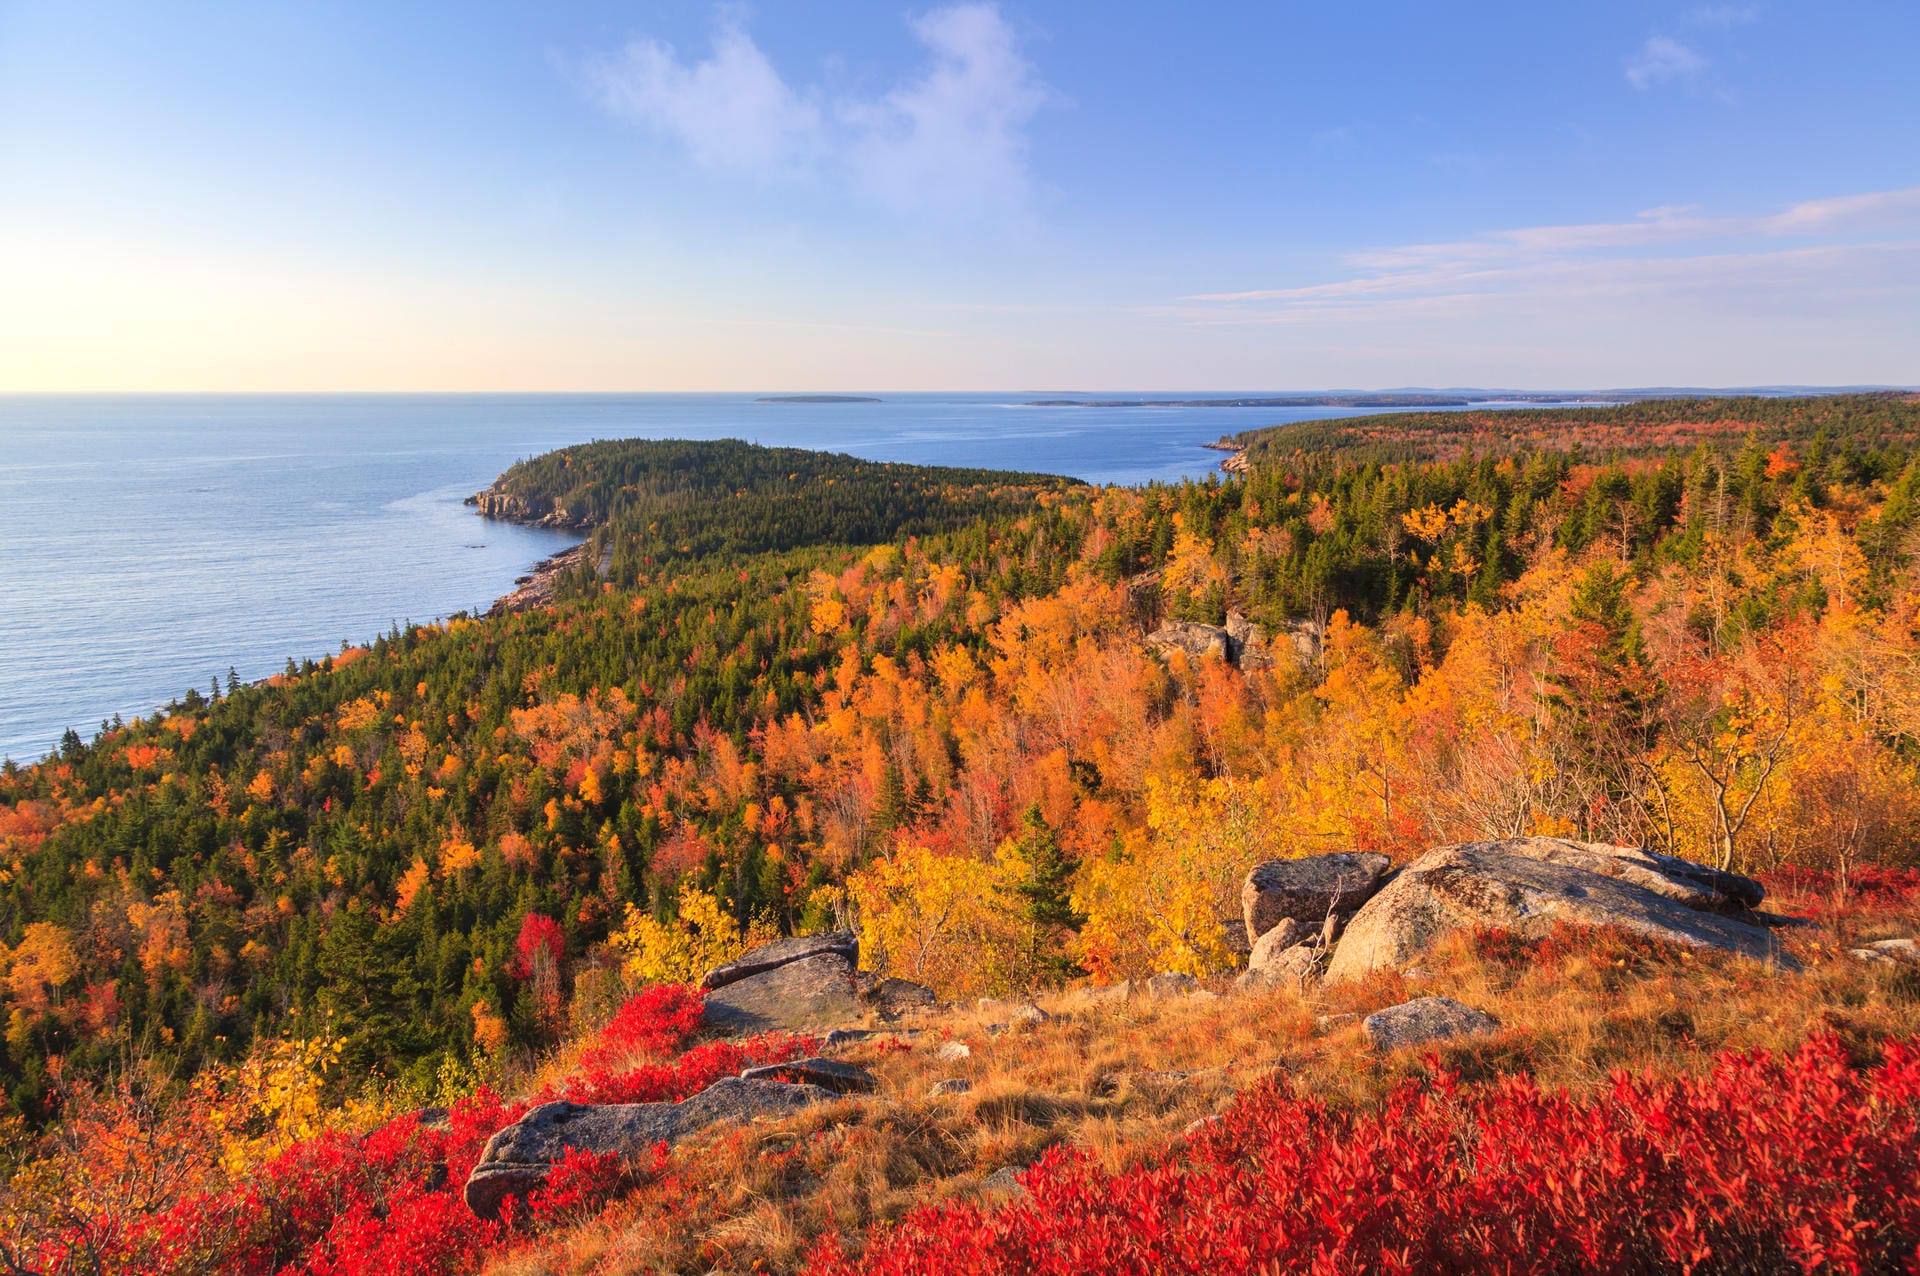 Acadia-Nationalpark: Er liegt an der Ostküste der USA und ist der einzige Nationalpark Neuenglands. Er ist bekannt für seine raue Landschaft und seine zerklüftete Felsküste.